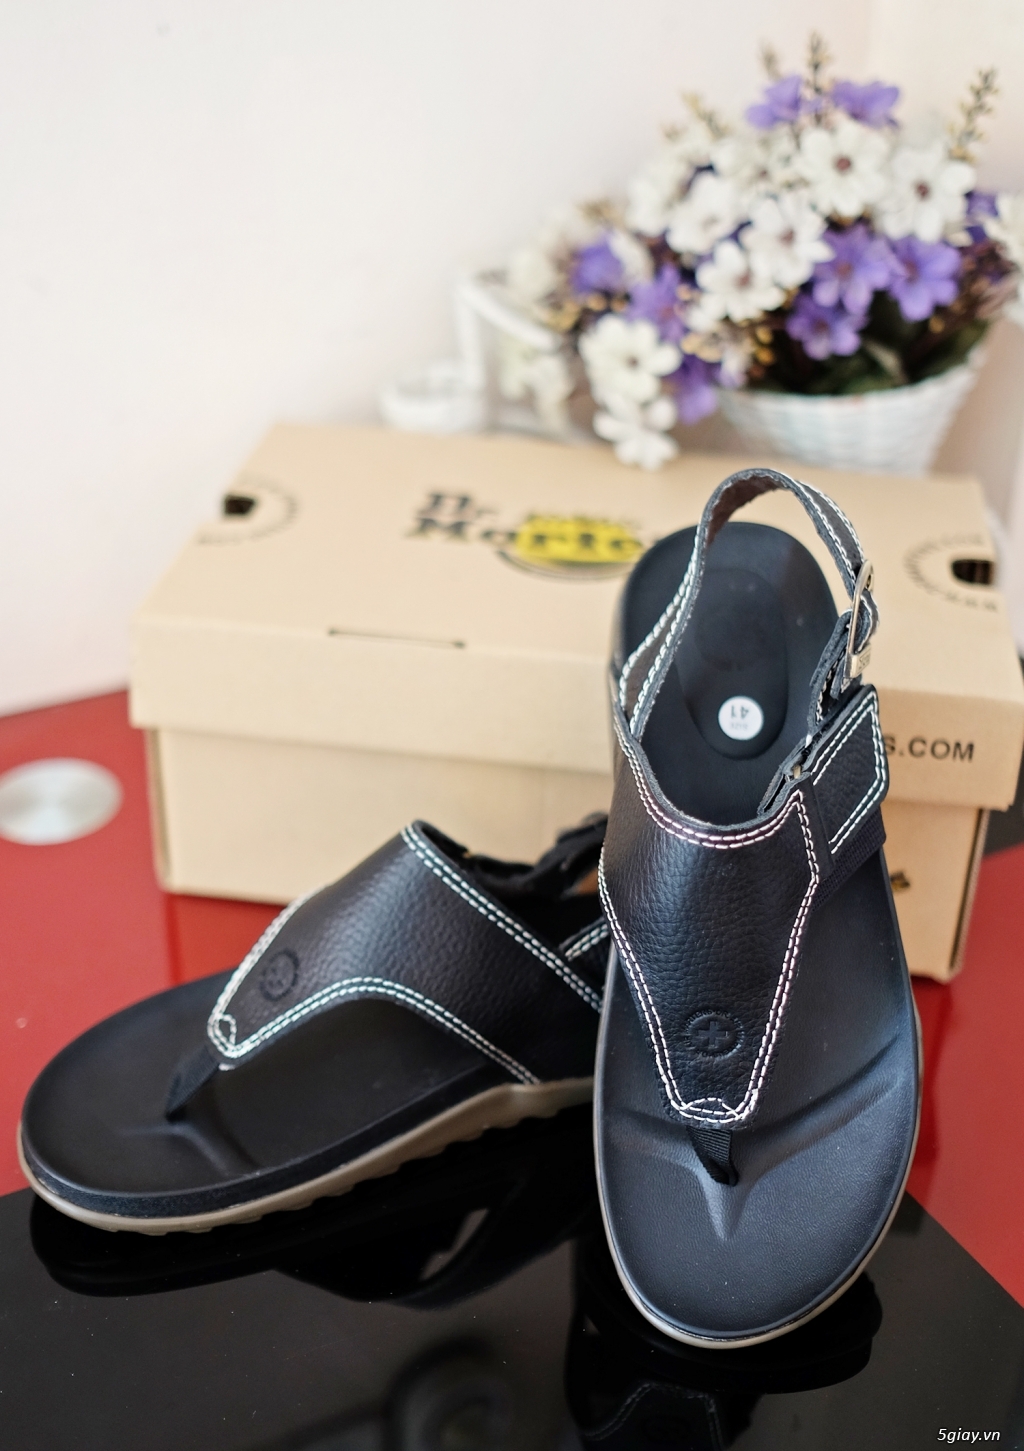 Legend Shoes: Các mẫu Giày , Dép ,Sandal hot nhất vịnh bắc bộ hè 2016. - 27